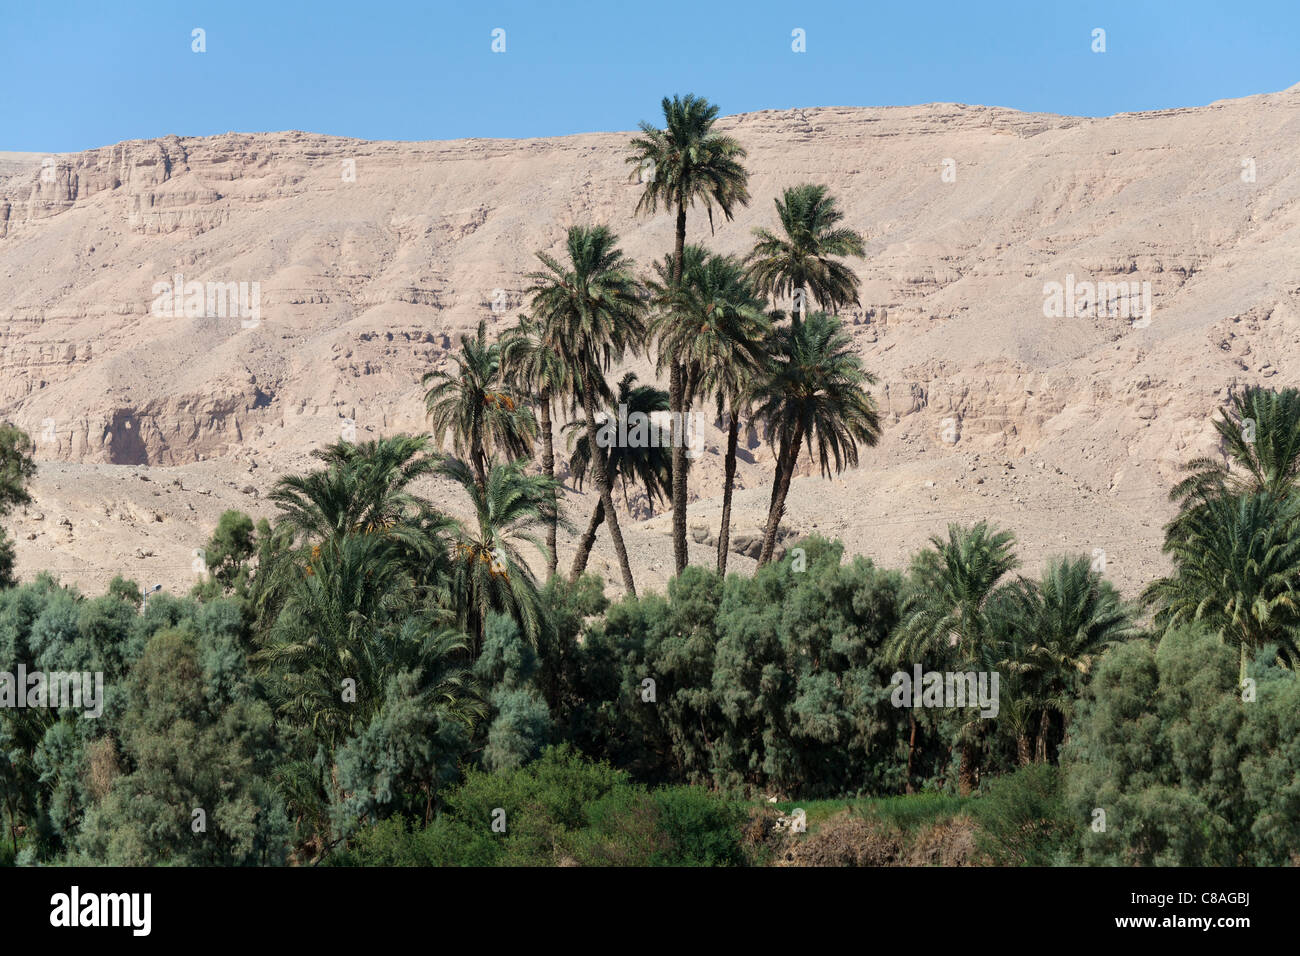 De hauteur et la hauteur moyenne des arbres et palmiers sur fond de montagnes du désert et le ciel bleu, les rives du Nil, l'Egypte, l'Afrique Banque D'Images